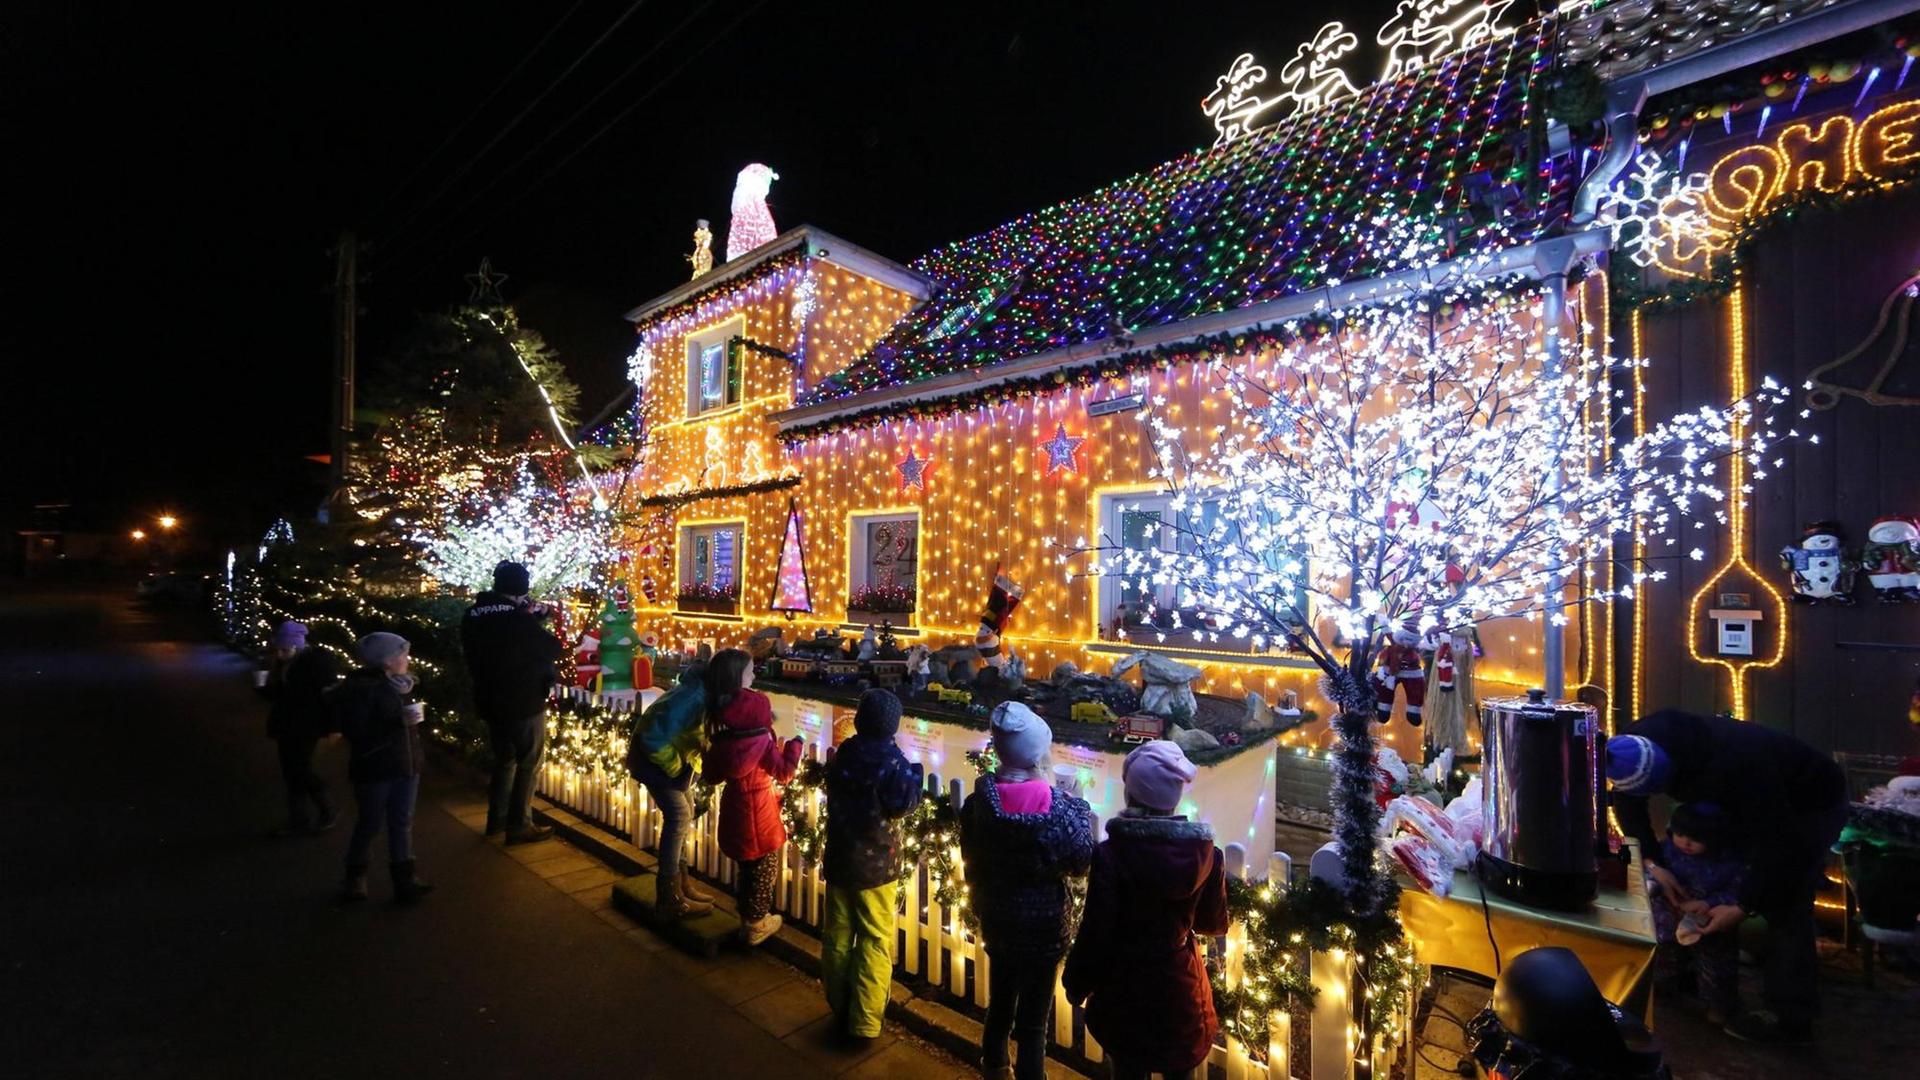 Weihnachten 2017 in Walschleben: Mario Leicht hat fünf Kilometer Lichterketten verlegt, 120000 LEDs verbaut, die Fenster sind ein Adventskalender, seit Anfang Dezember besuchten rund 3000 Besucher das Haus.